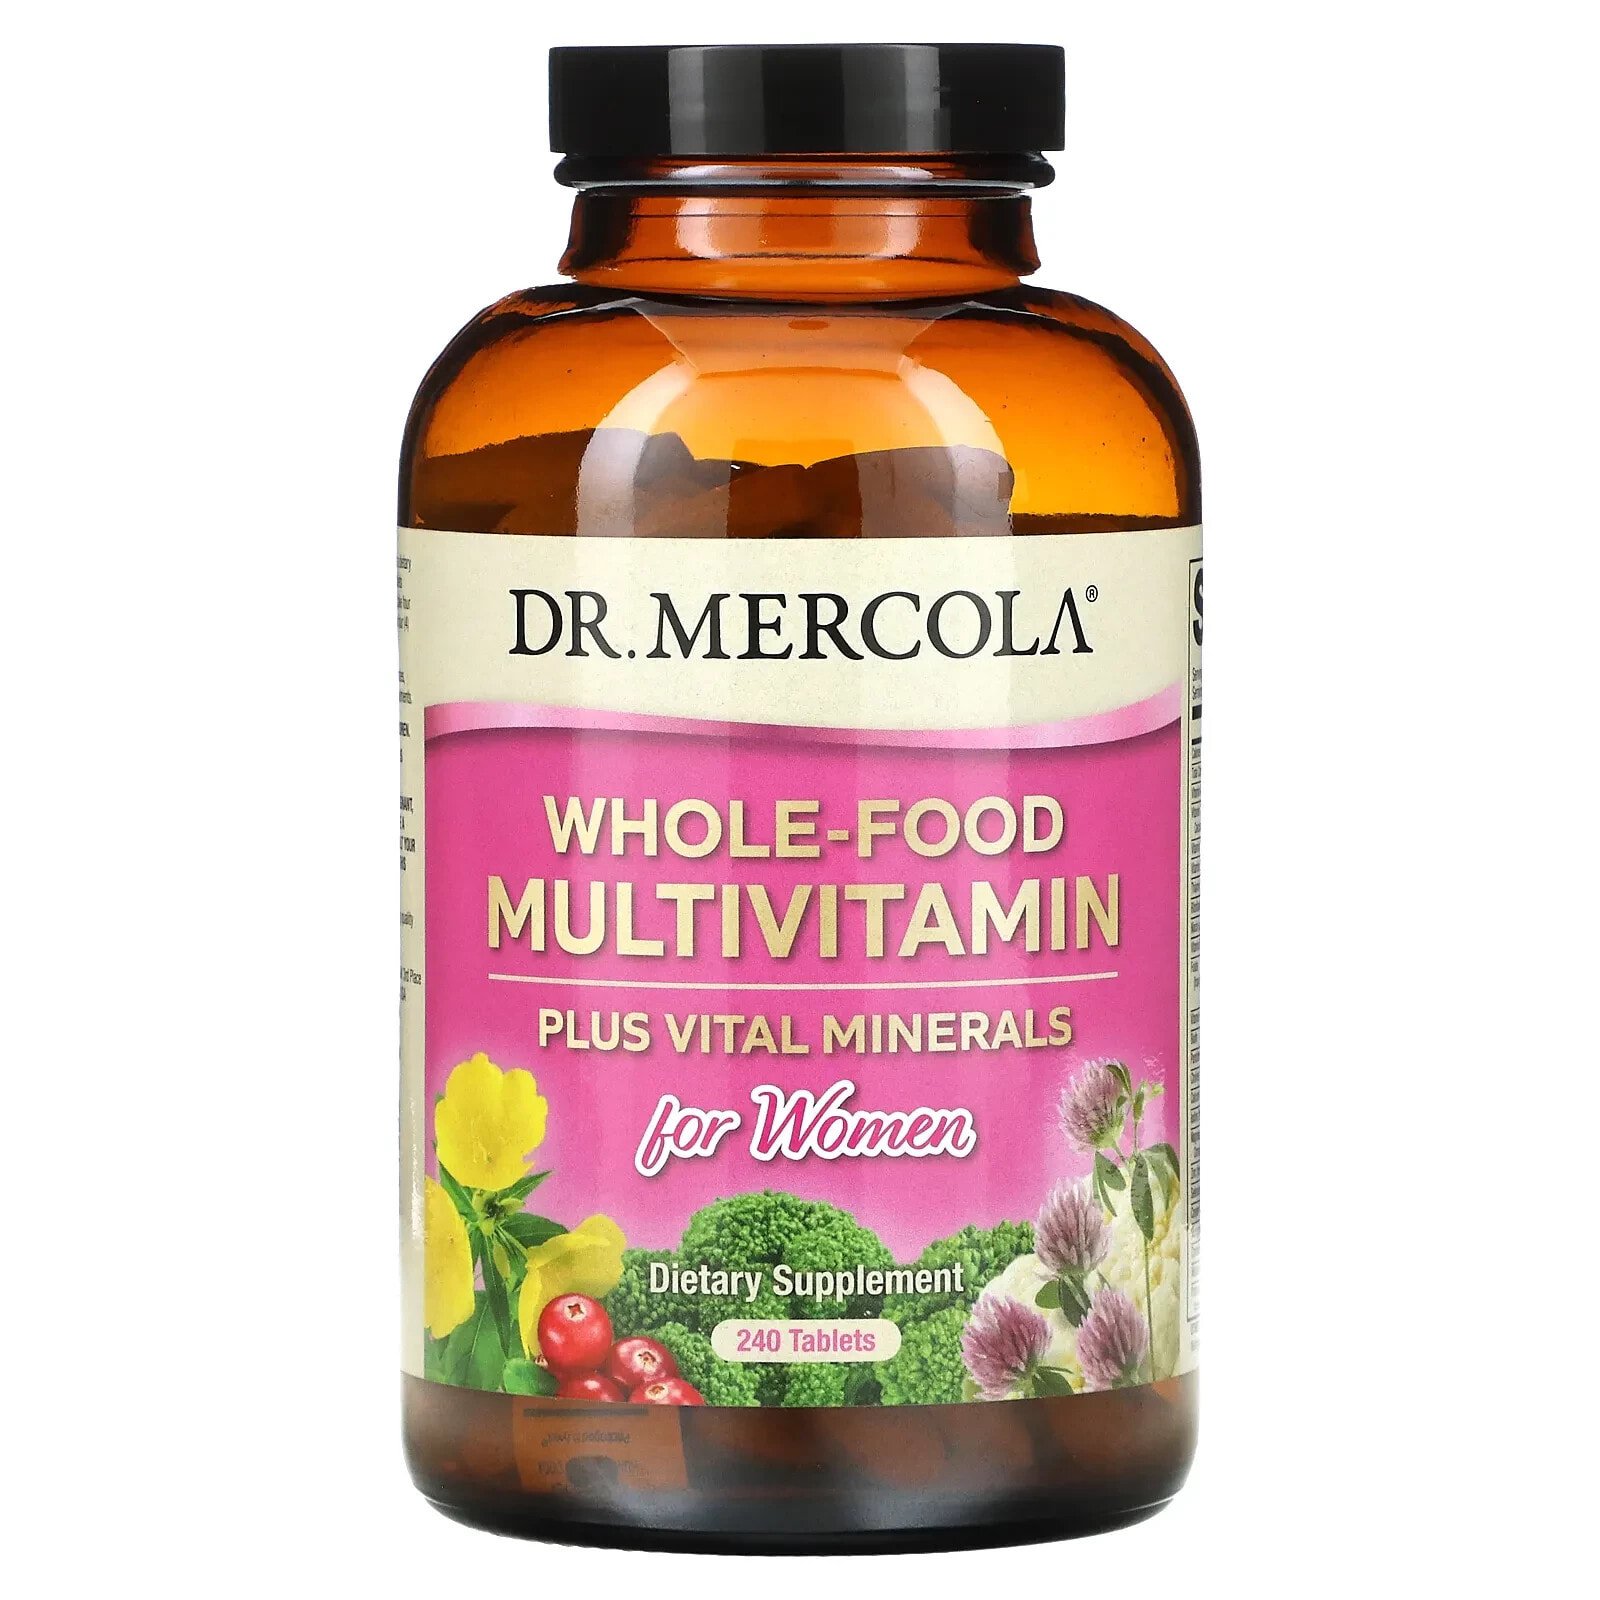 ДР. Меркола, Мультивитамины из цельных продуктов плюс необходимые микроэлементы для женщин, 240 таблеток